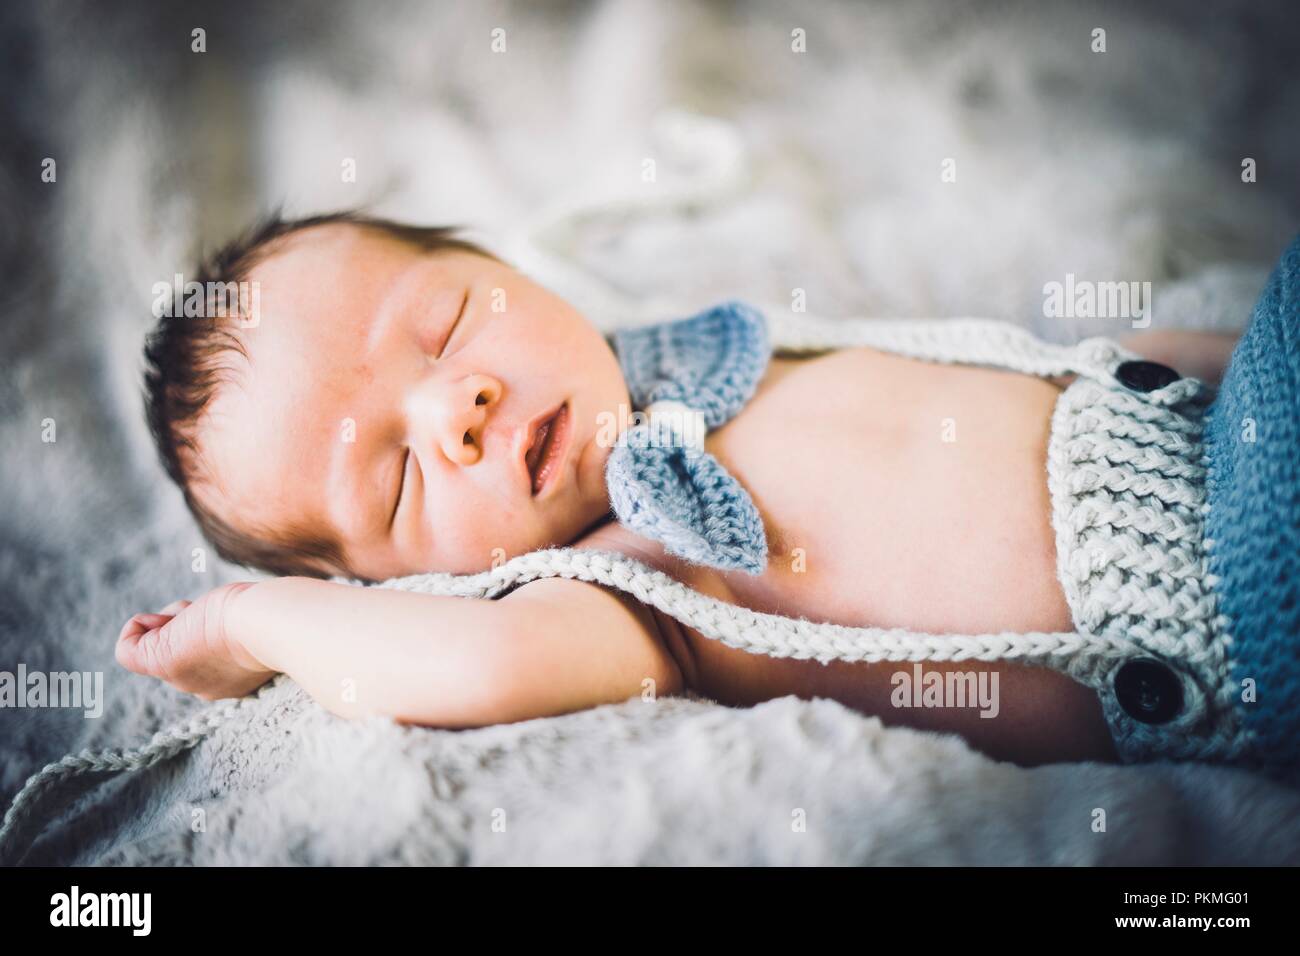 Ein neugeborenes Baby schlafen in Blau und Grau aus Gewirken Bow Tie und Hose, Portugal Stockfoto